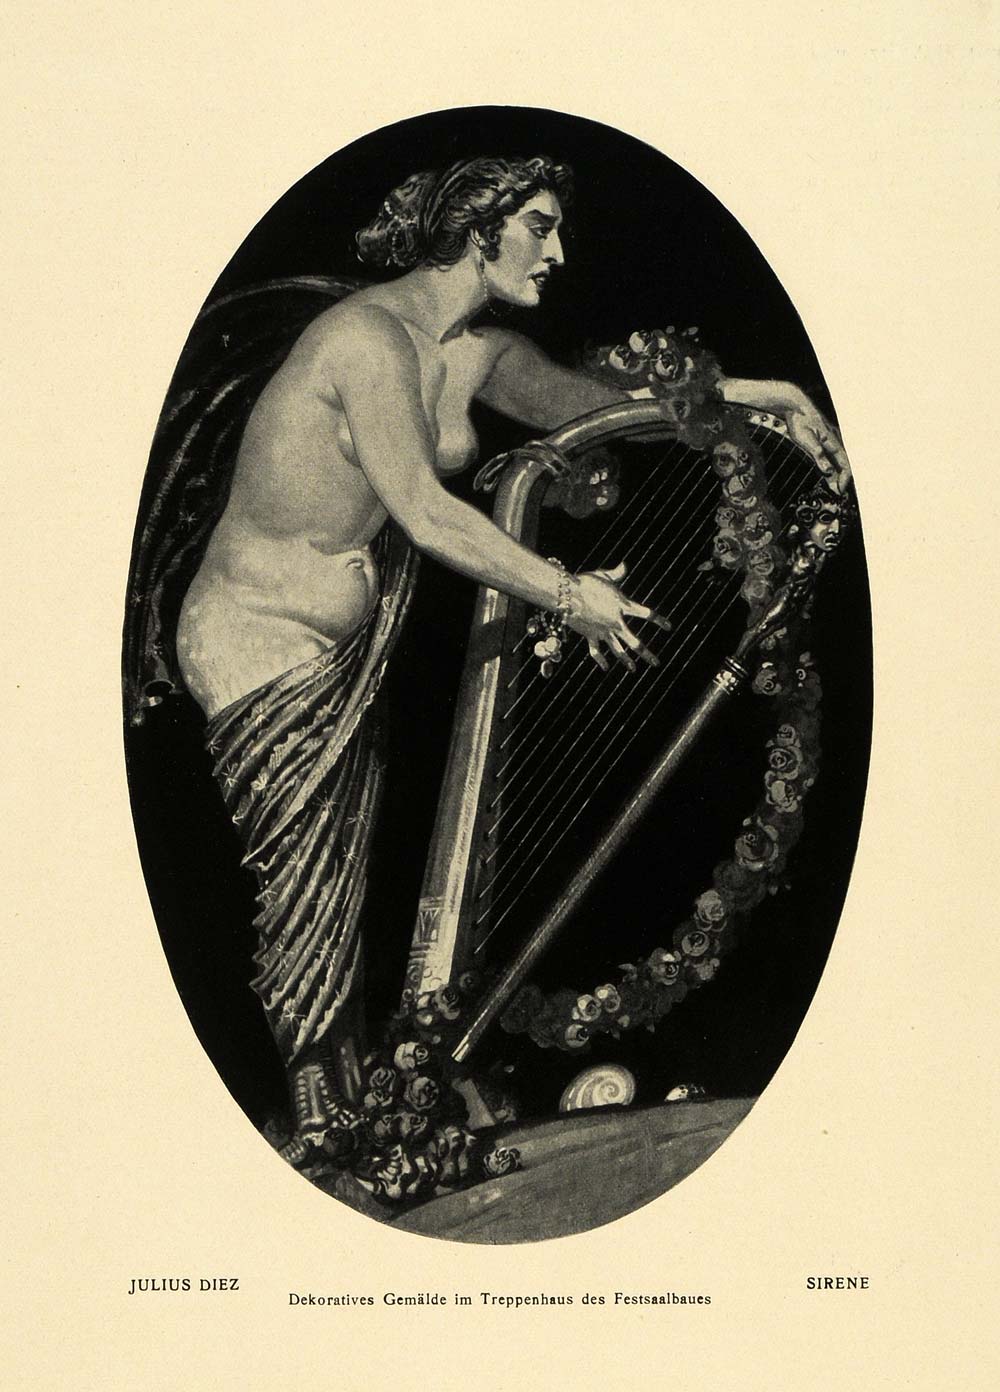 1915 Print Artist Julius Diez Greek Siren Luring Song Harp Nude Painting DKU1